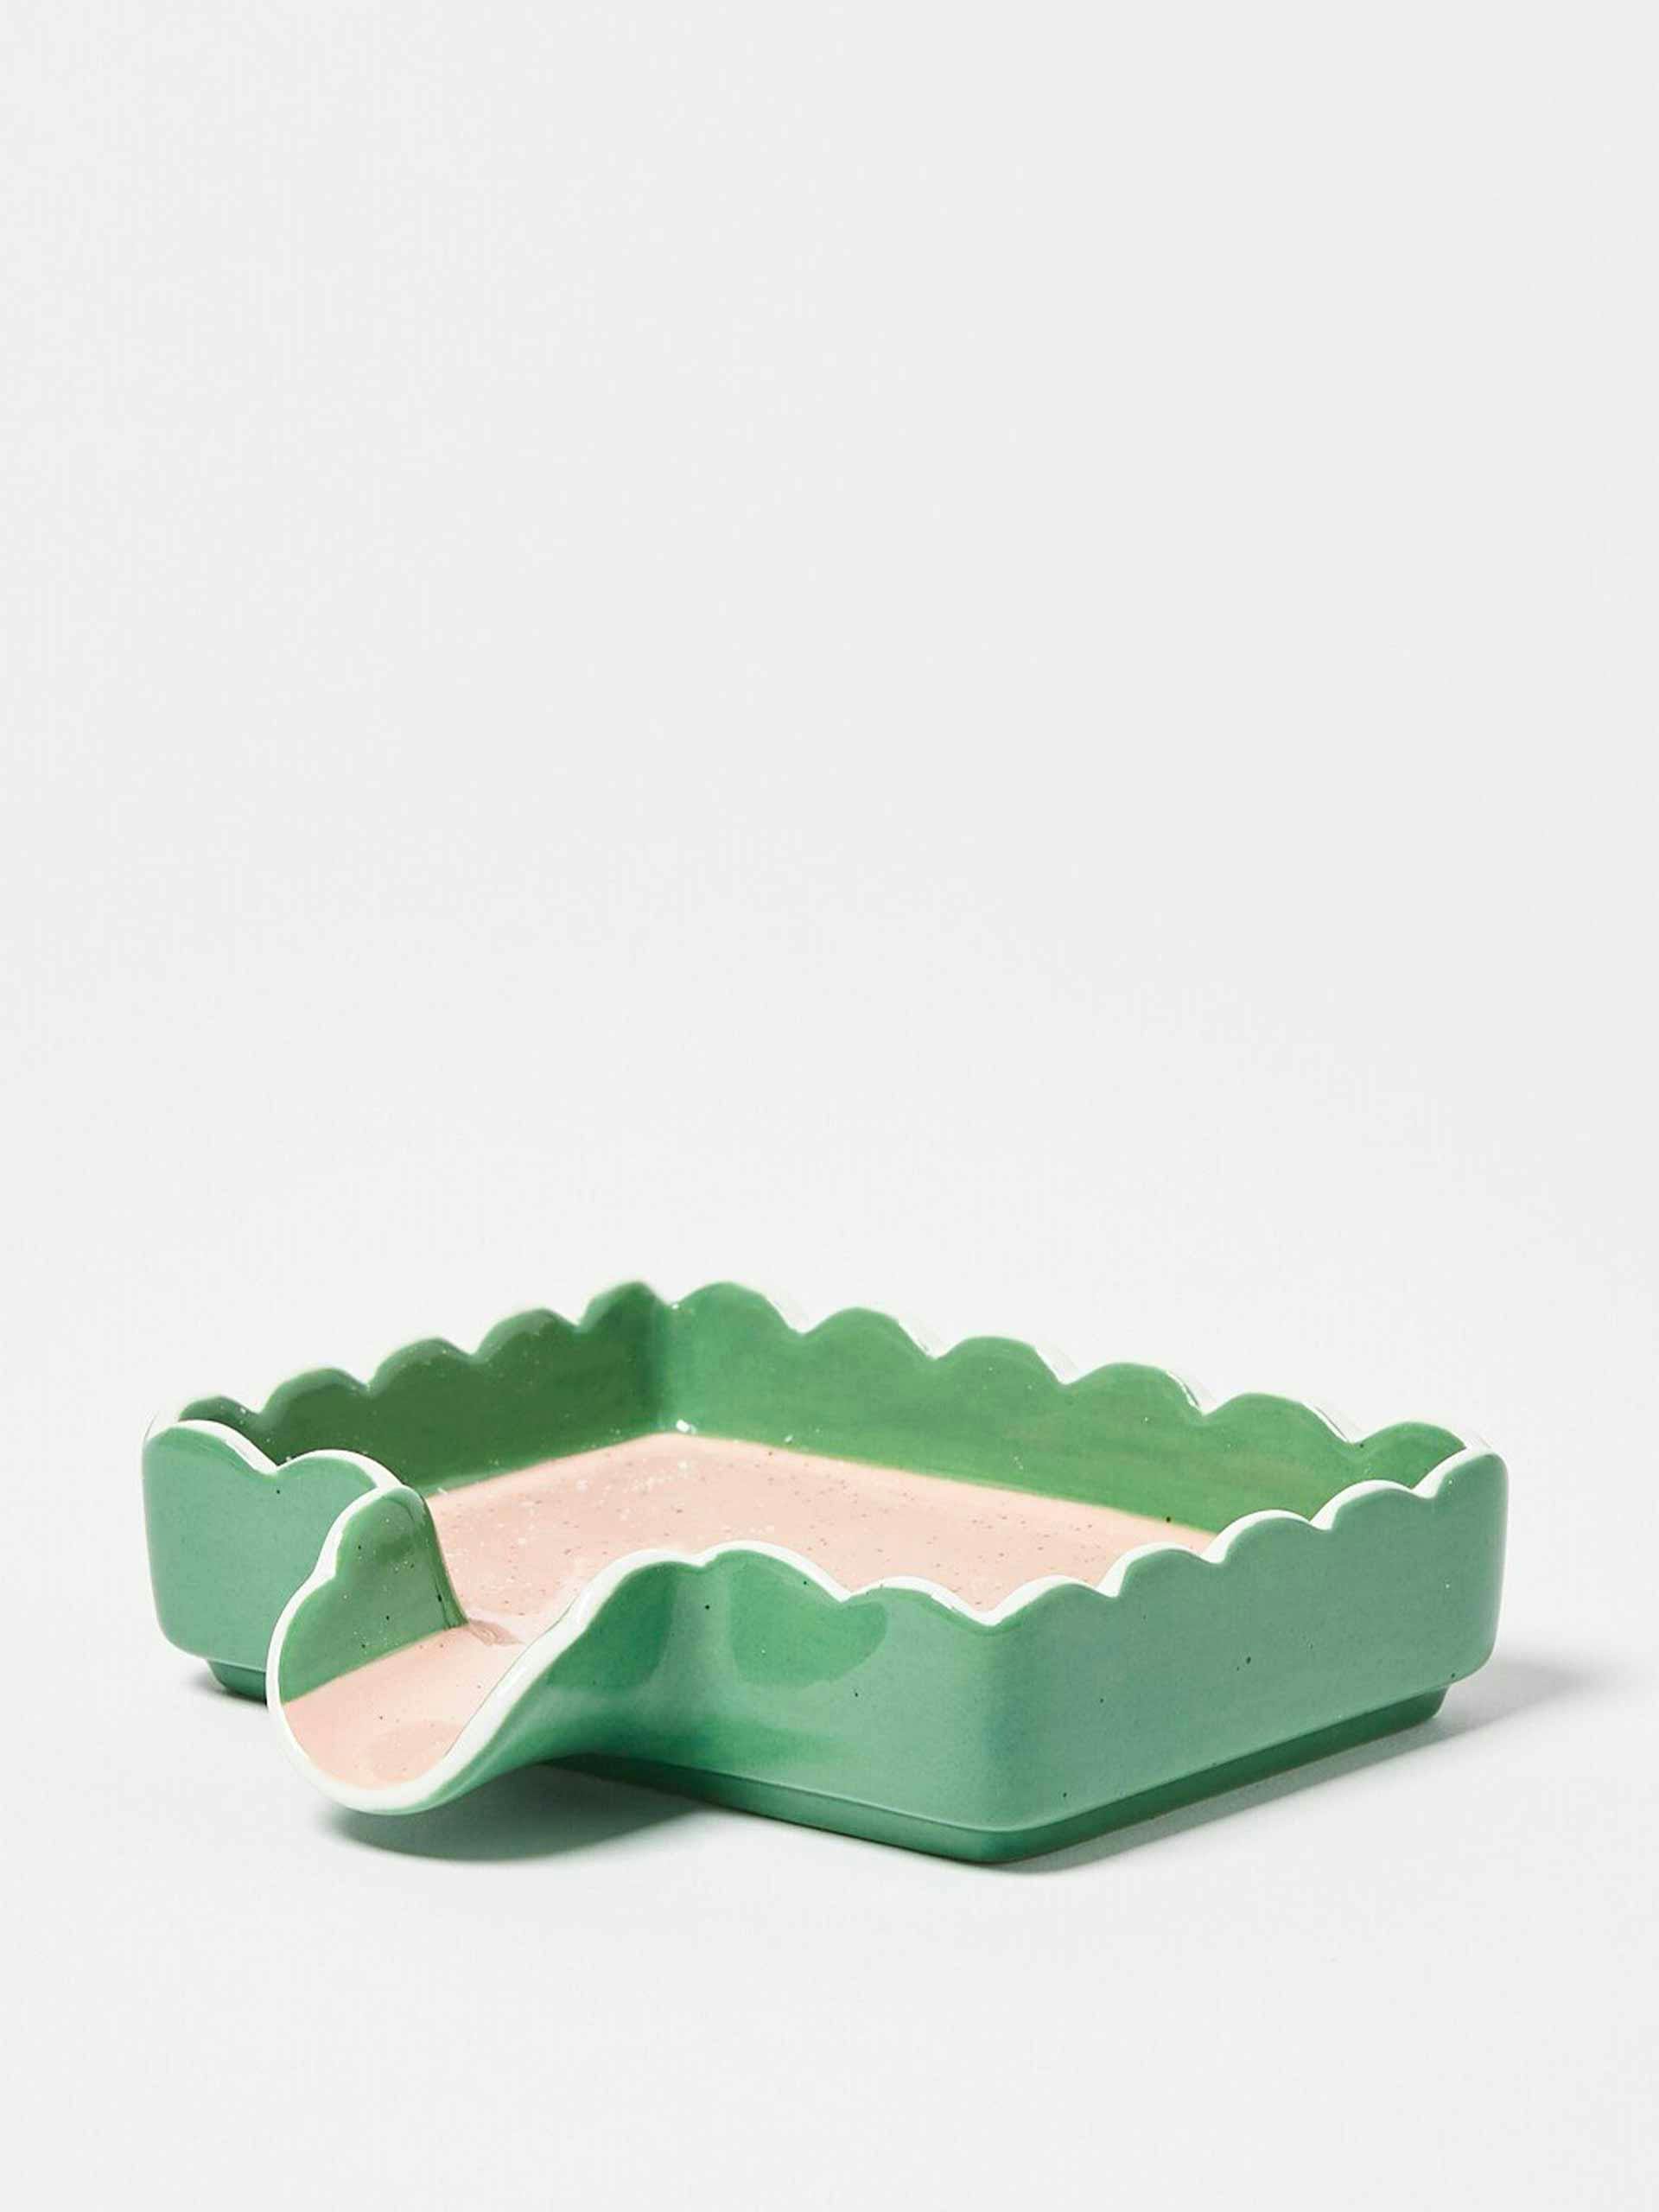 Green ceramic scalloped soap dish